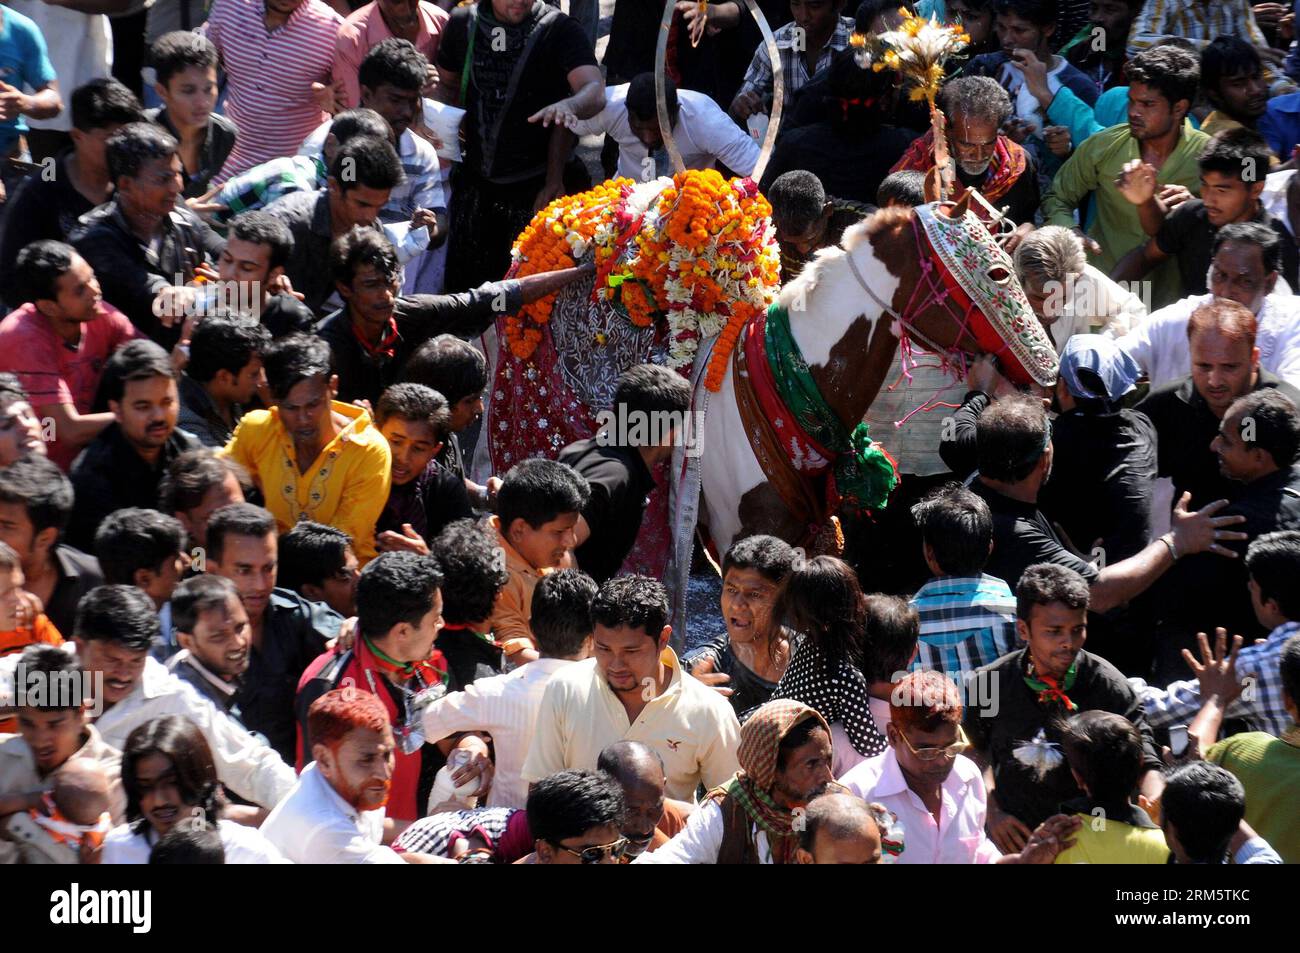 Bildnummer: 60719381 Datum: 15.11.2013 Copyright: imago/Xinhua (131115) -- DHAKA, 15. Nov. 2013 (Xinhua) -- Bangladeschisch-schiitische Muslime feiern in einer religiösen Prozession anlässlich Ashuras in Dhaka, Bangladesch, 15. Nov. 2013. Ashura ist der Trauertag unter Schiiten anlässlich des Todes von Imam Hussein, dem Enkel des Propheten Mohammed, der 680 n. Chr. in der irakischen Stadt Karbala getötet und begraben wurde. (Xinhua/Shariful Islam) BANGLADESCH-DHAKA-ASHURA PUBLICATIONxNOTxINxCHN xns x0x 2013 quer Premiumd 60719381 Datum 15 11 2013 Copyright Imago XINHUA Dhaka 15. November 2013 XINHUA Bangladeshi Shiite Moslems CEL Stockfoto